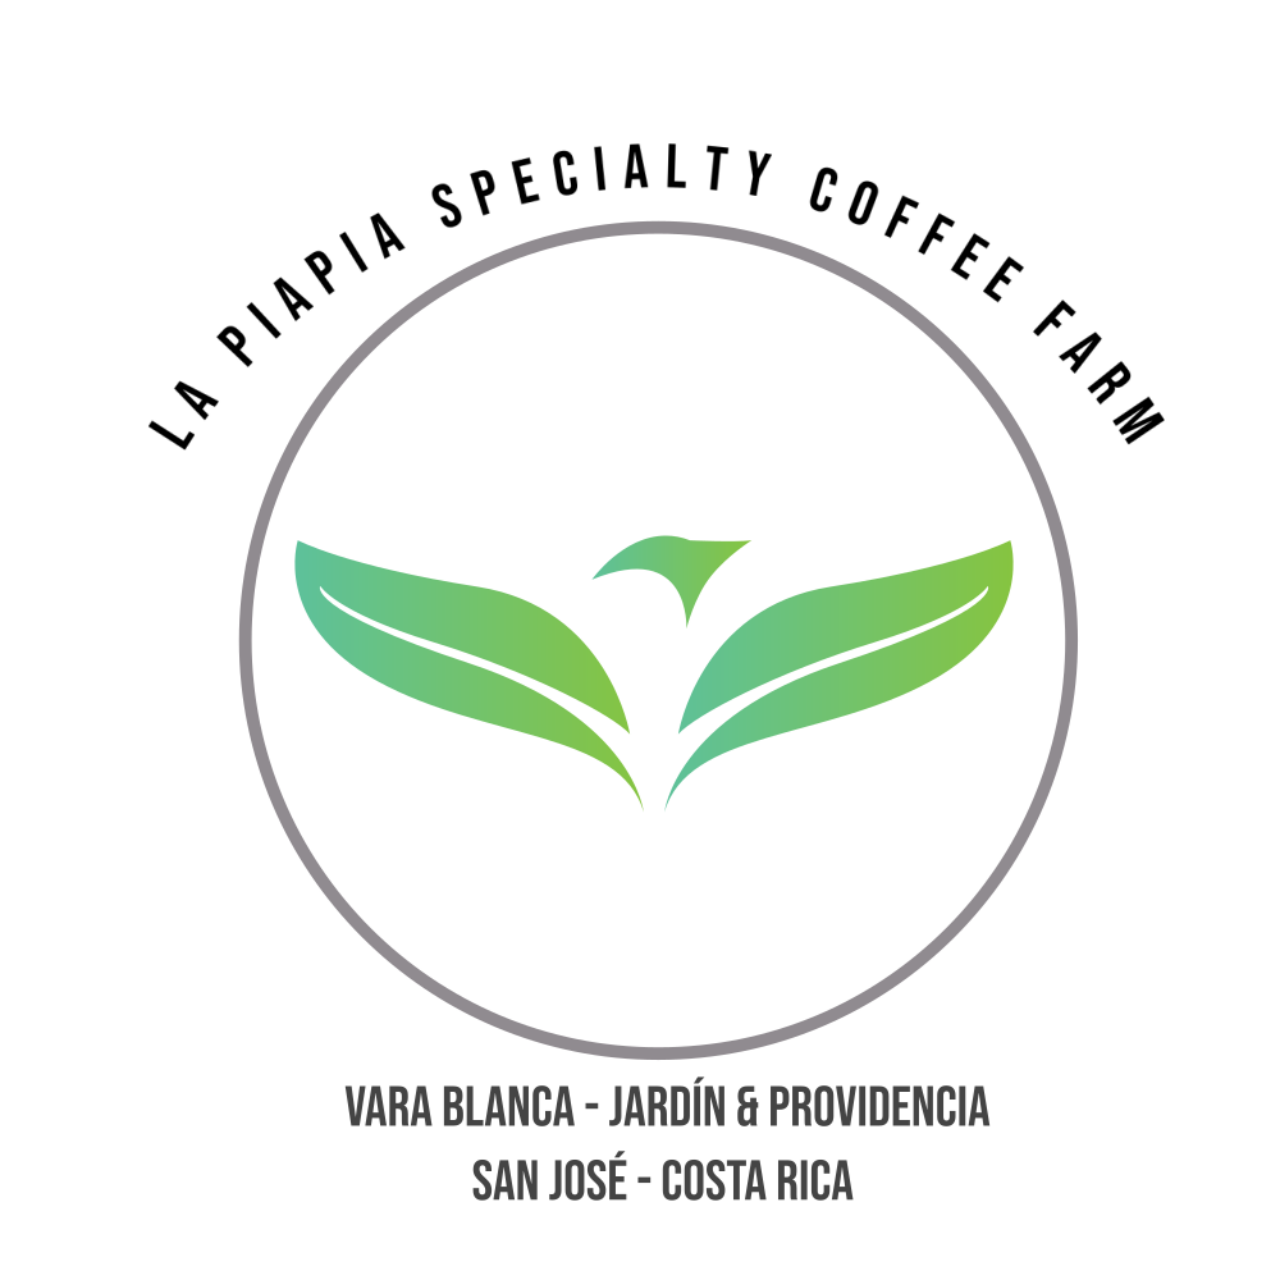 Specialty coffee La Piapia 's web page